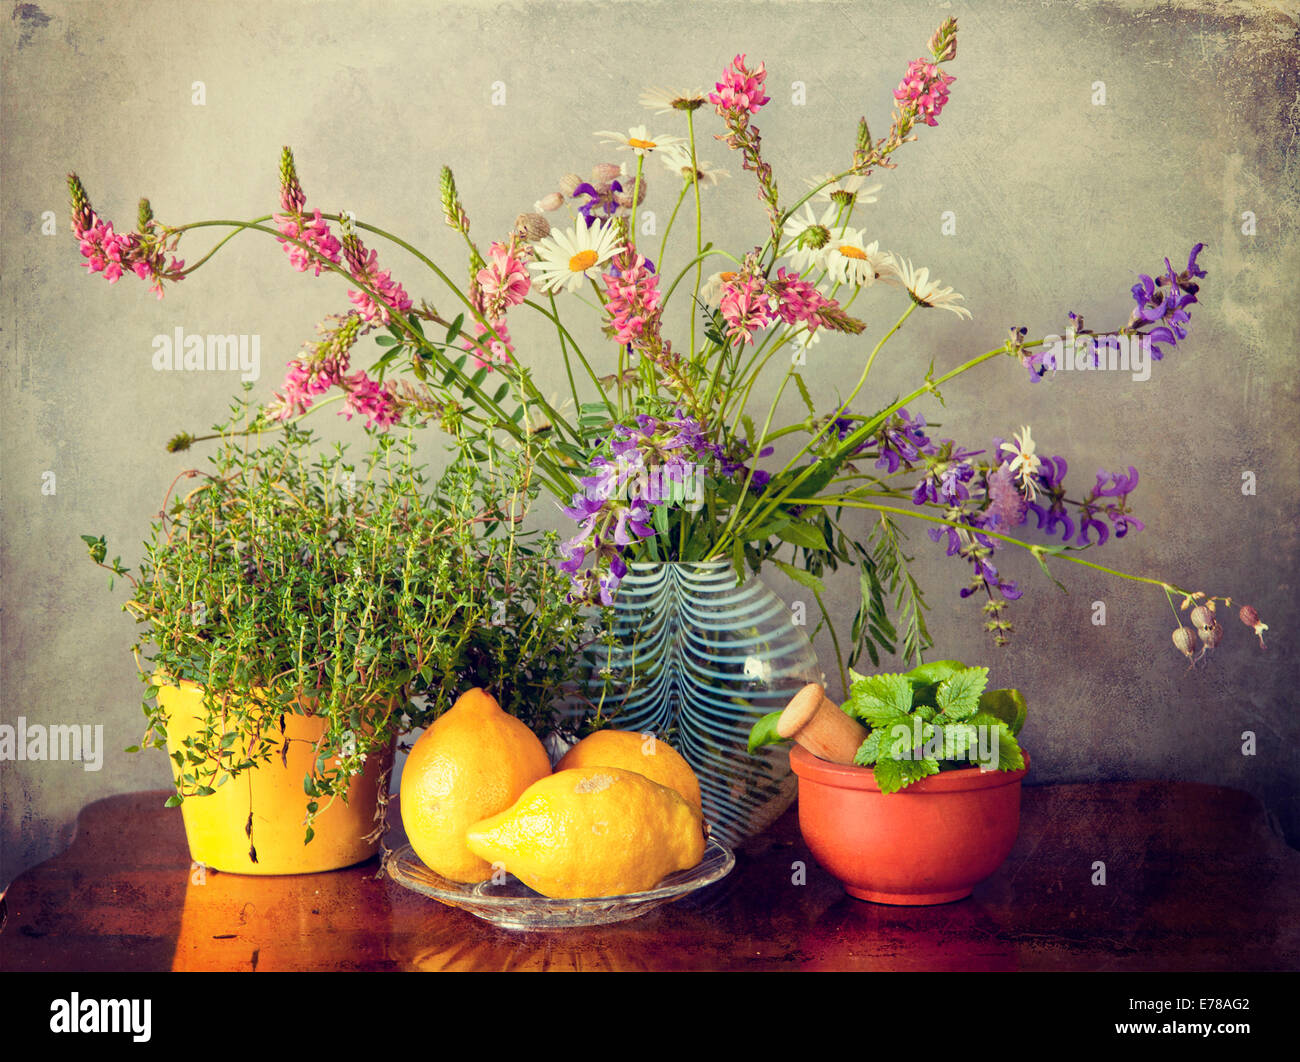 Kräuter aus dem Garten, Wiesenblumen in Vase und Zitrone Obst. Grunge Texturen und Instagram-Retro-Effekt Stockfoto